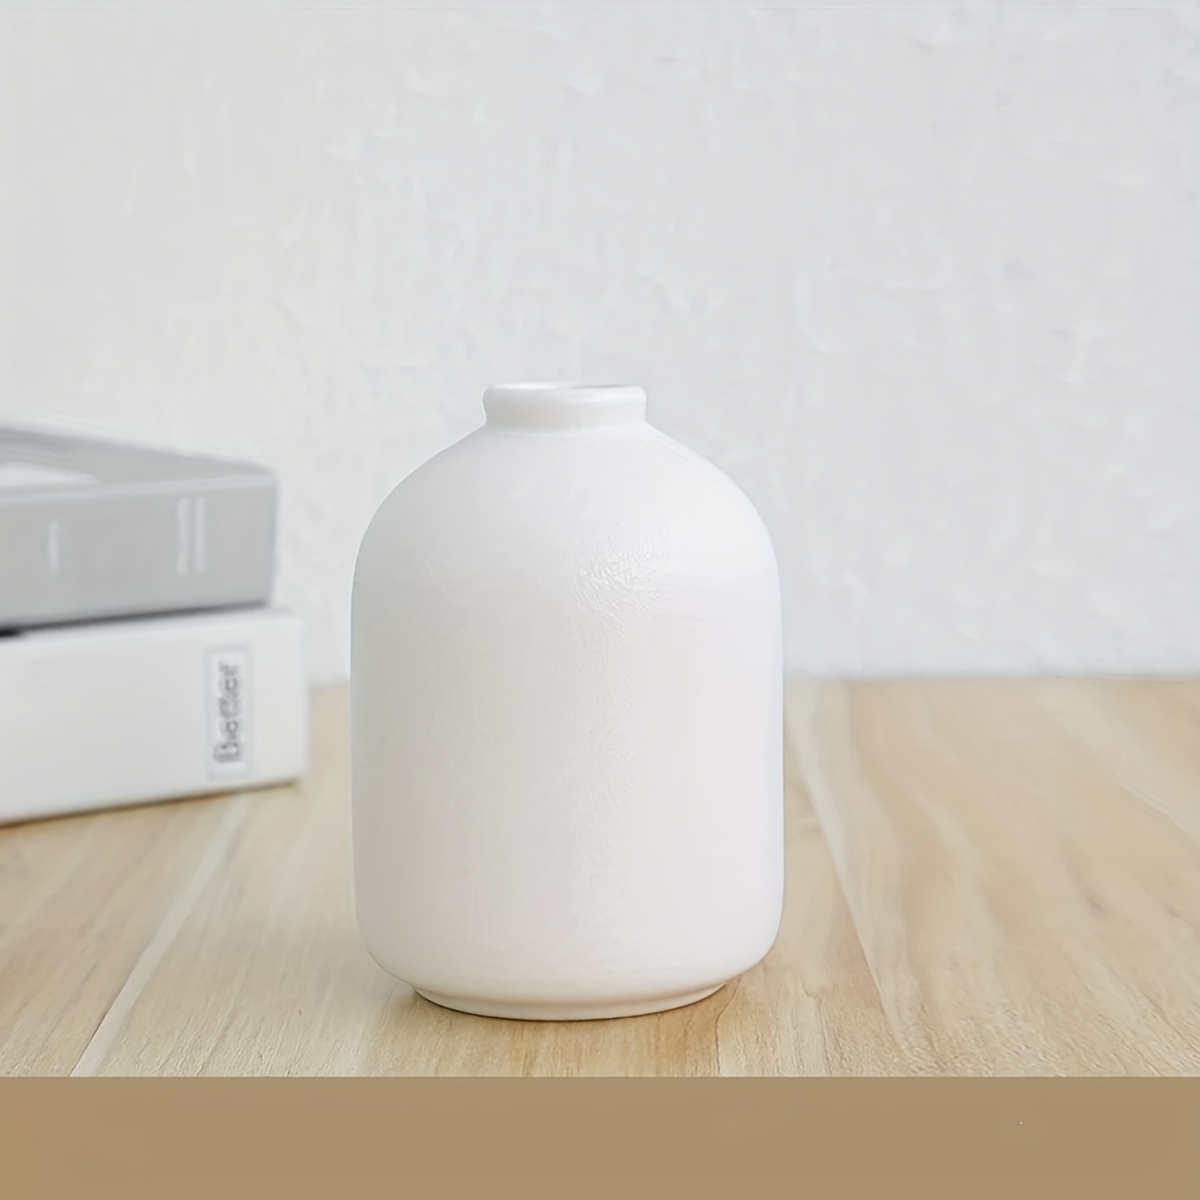 Jarrón cerámica blanco - jarrones para tu hogar